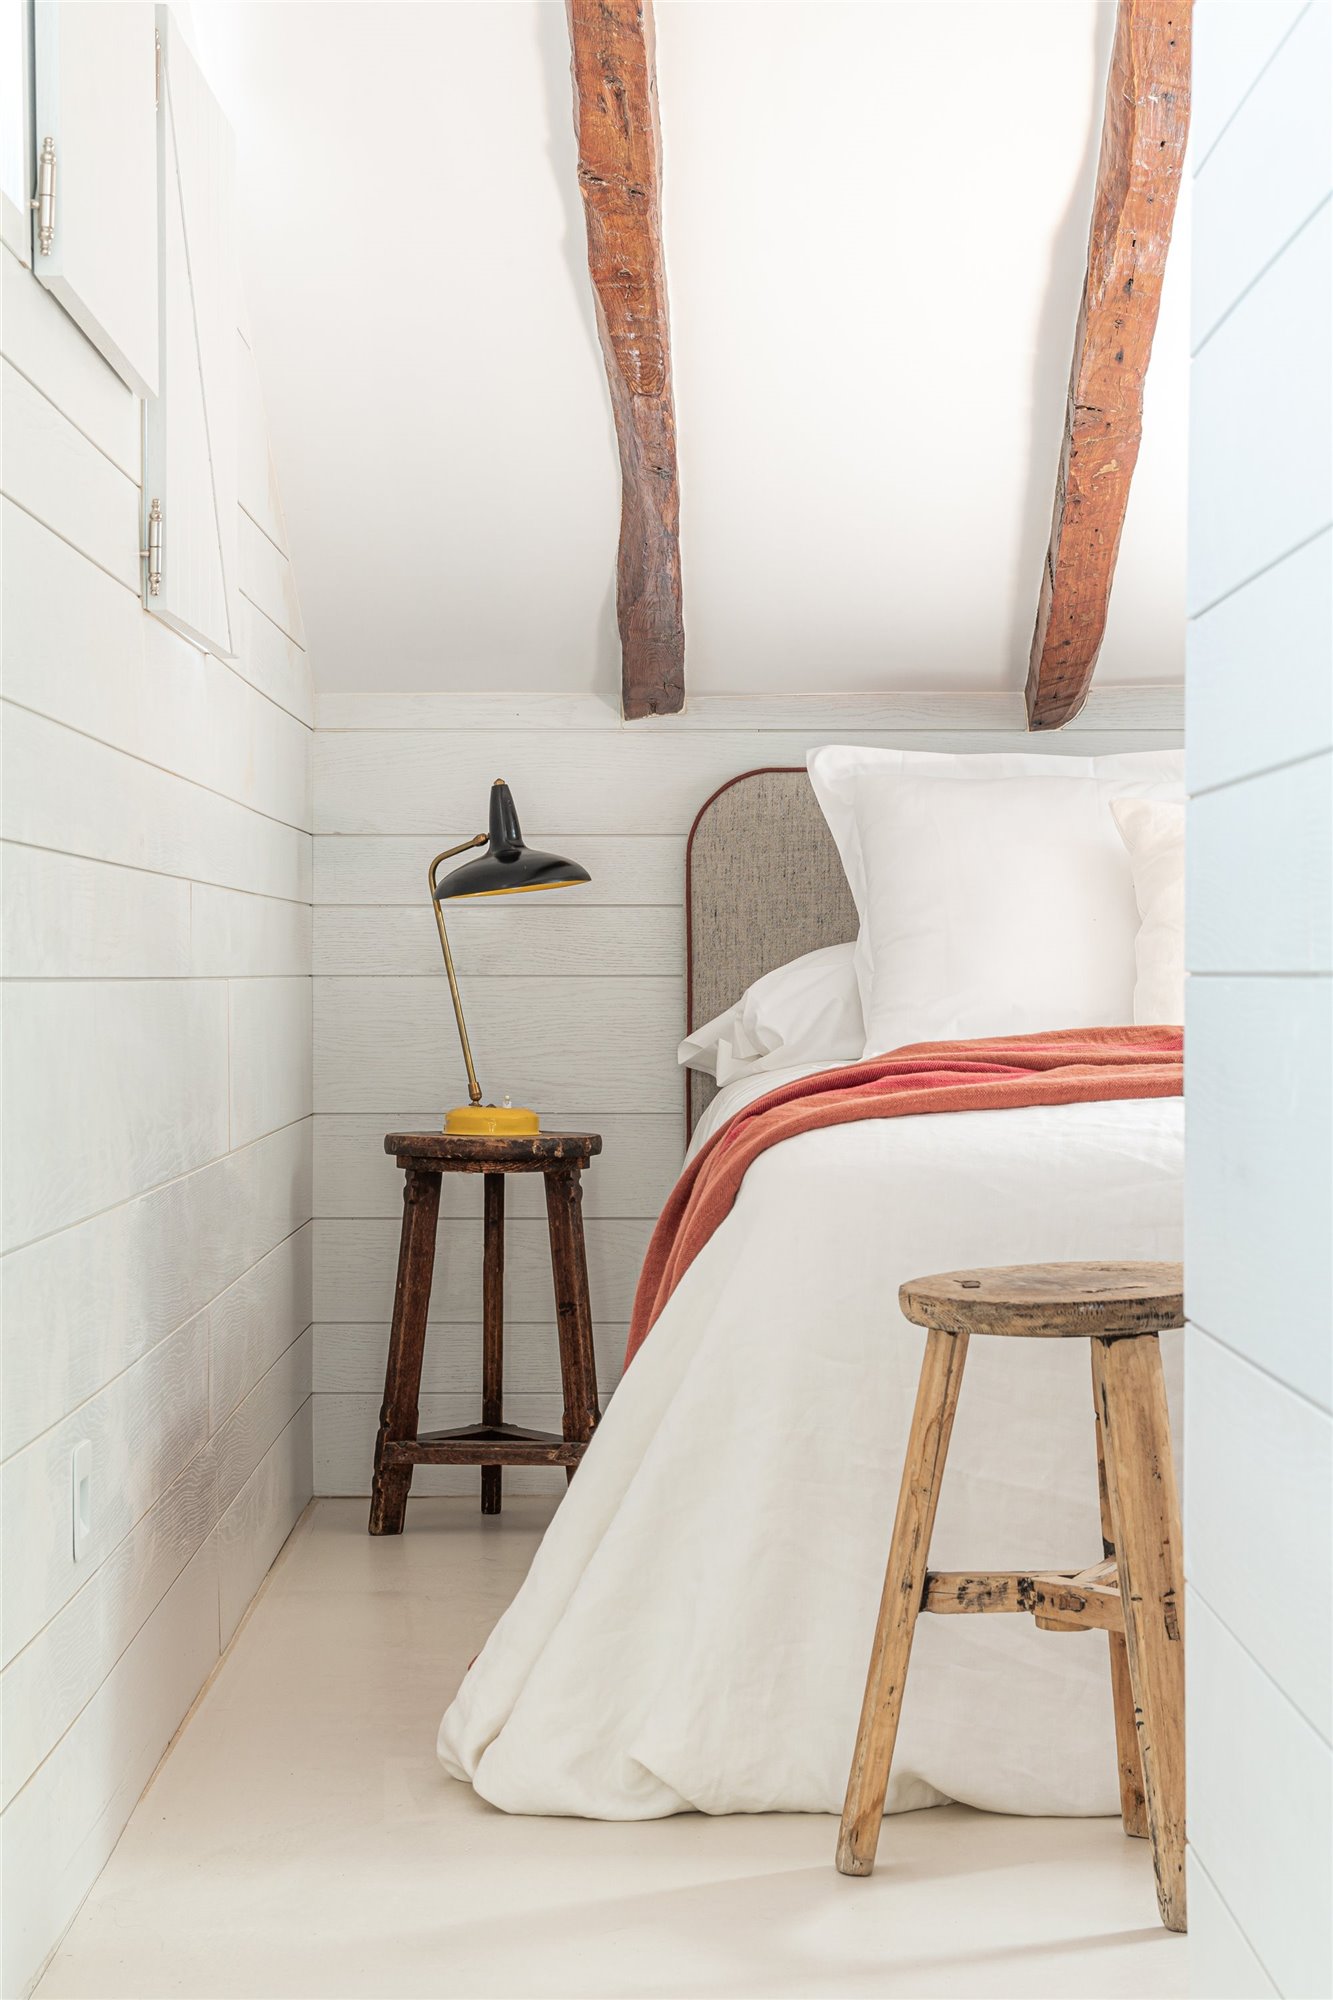 Atico en Madrid totalmente reformado con decoracion moderna dormitorio con buhardilla